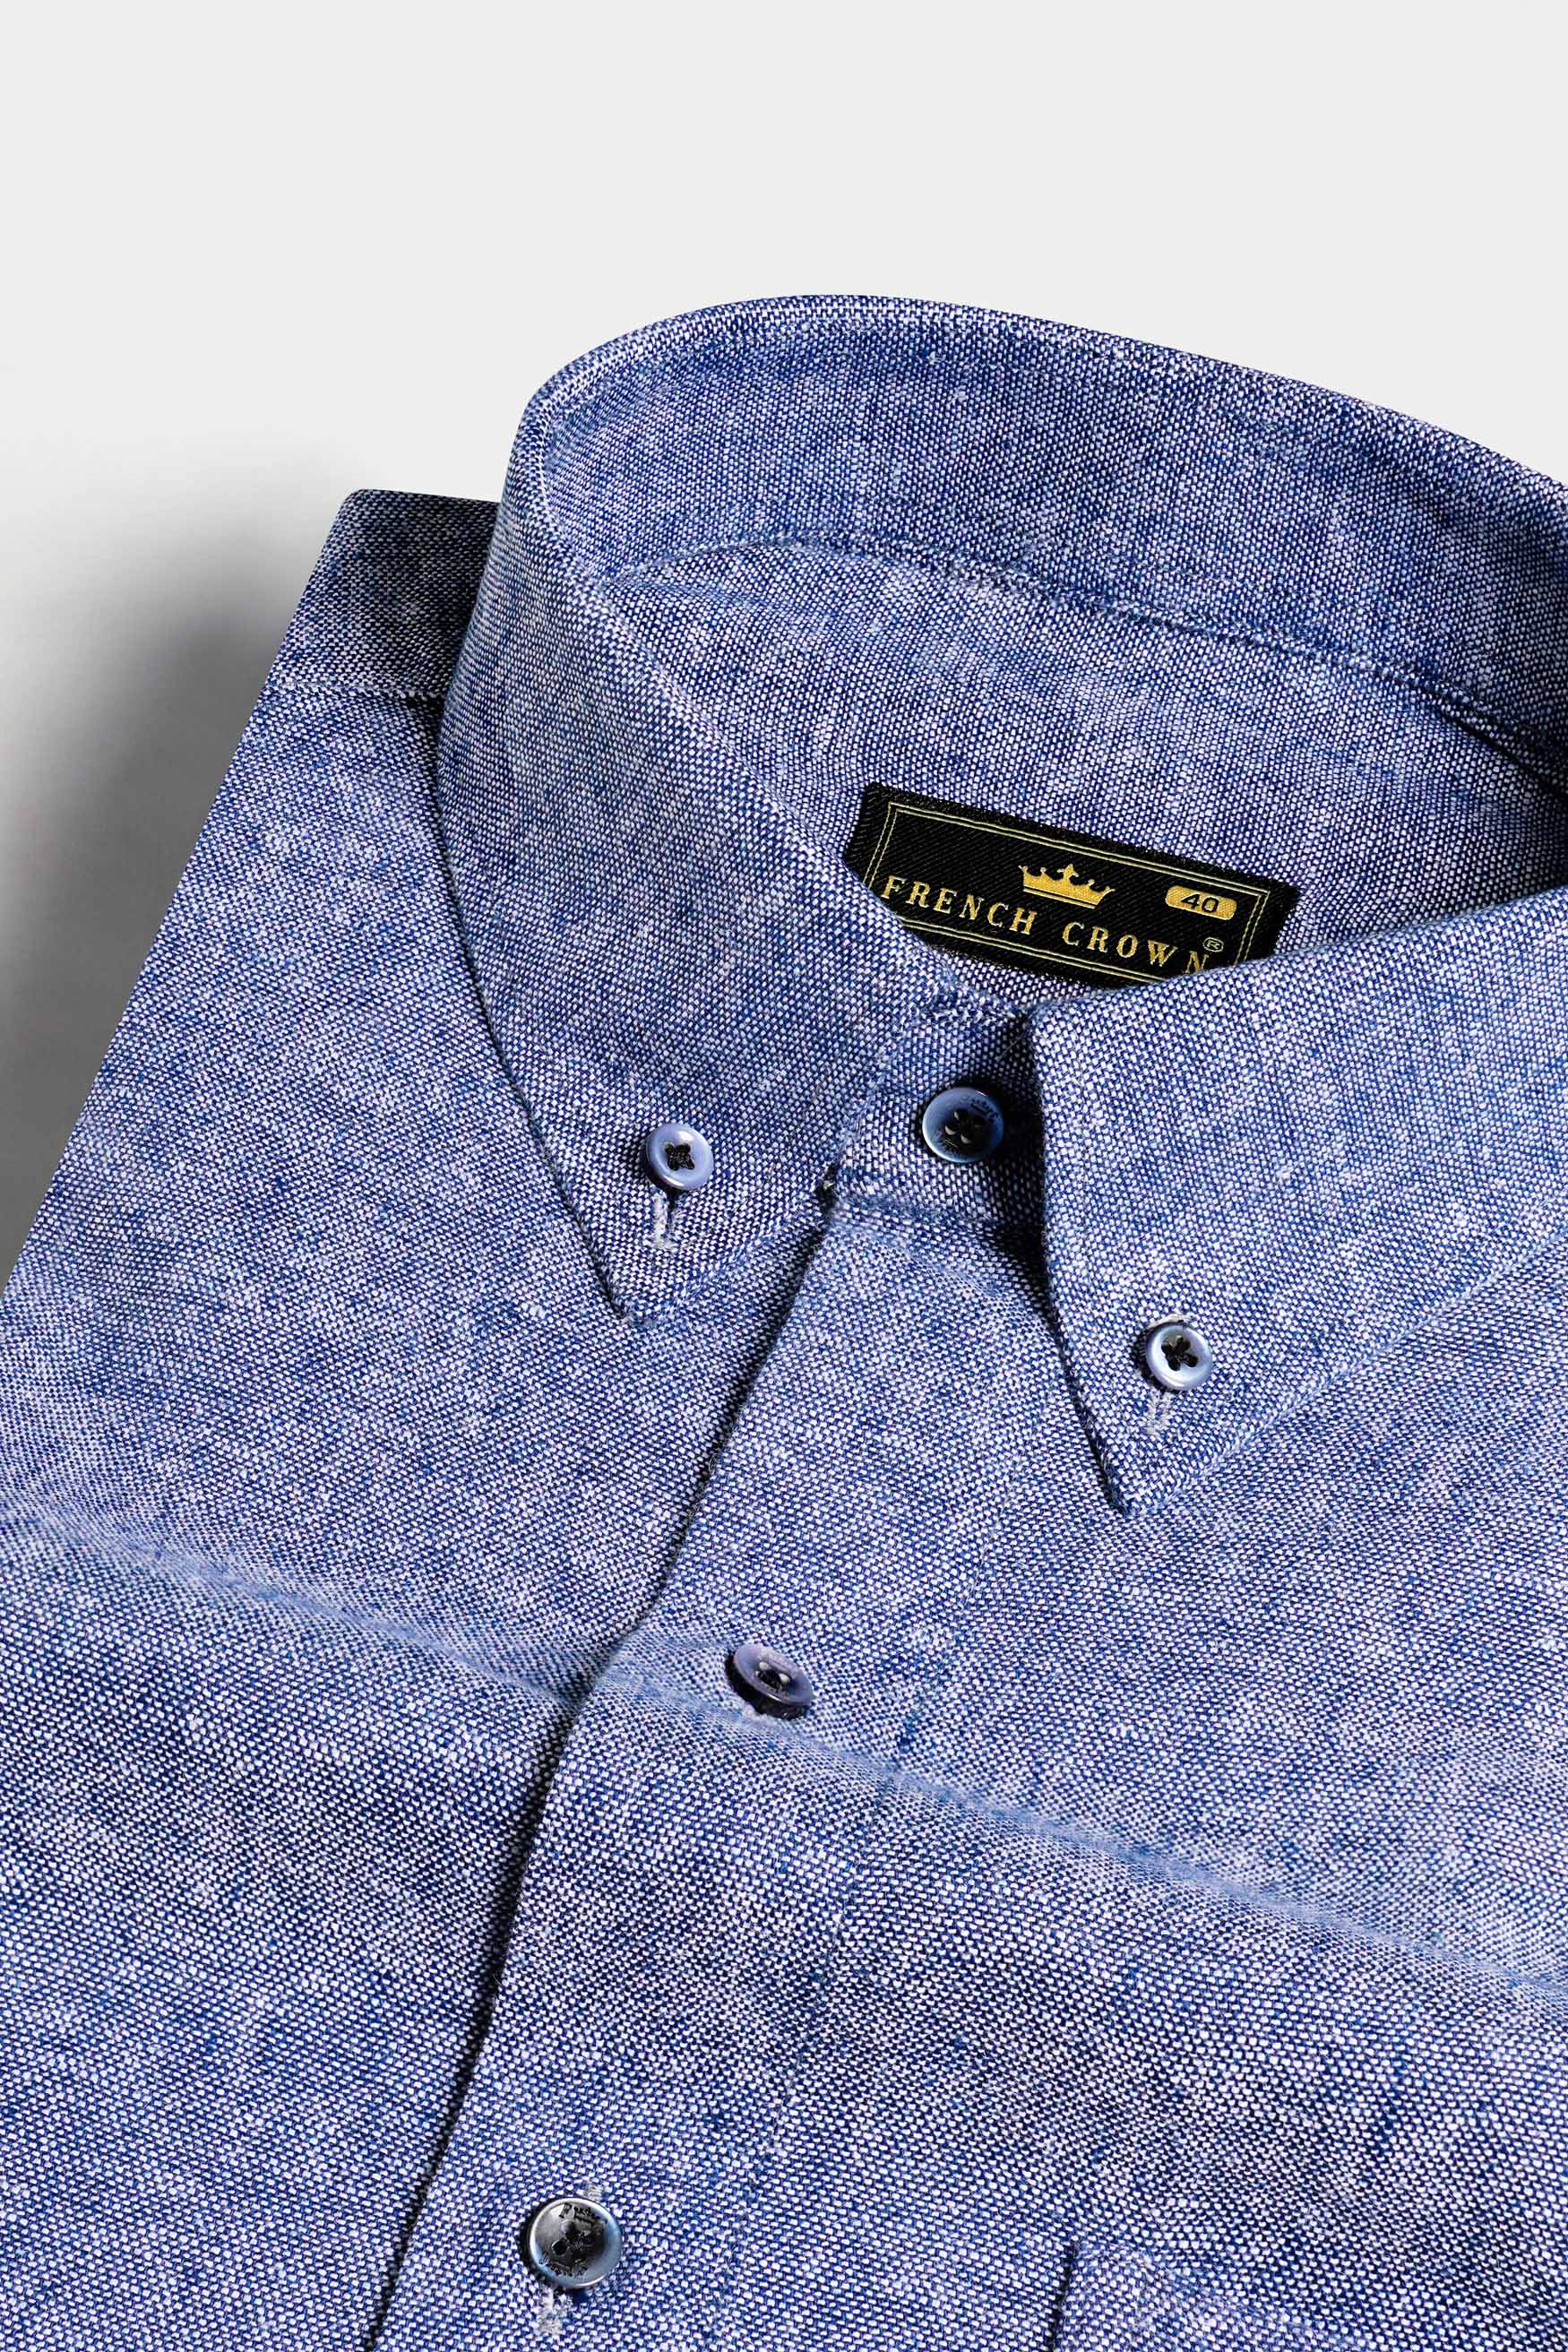 Hoki Blue Luxurious Linen Button Down Shirt